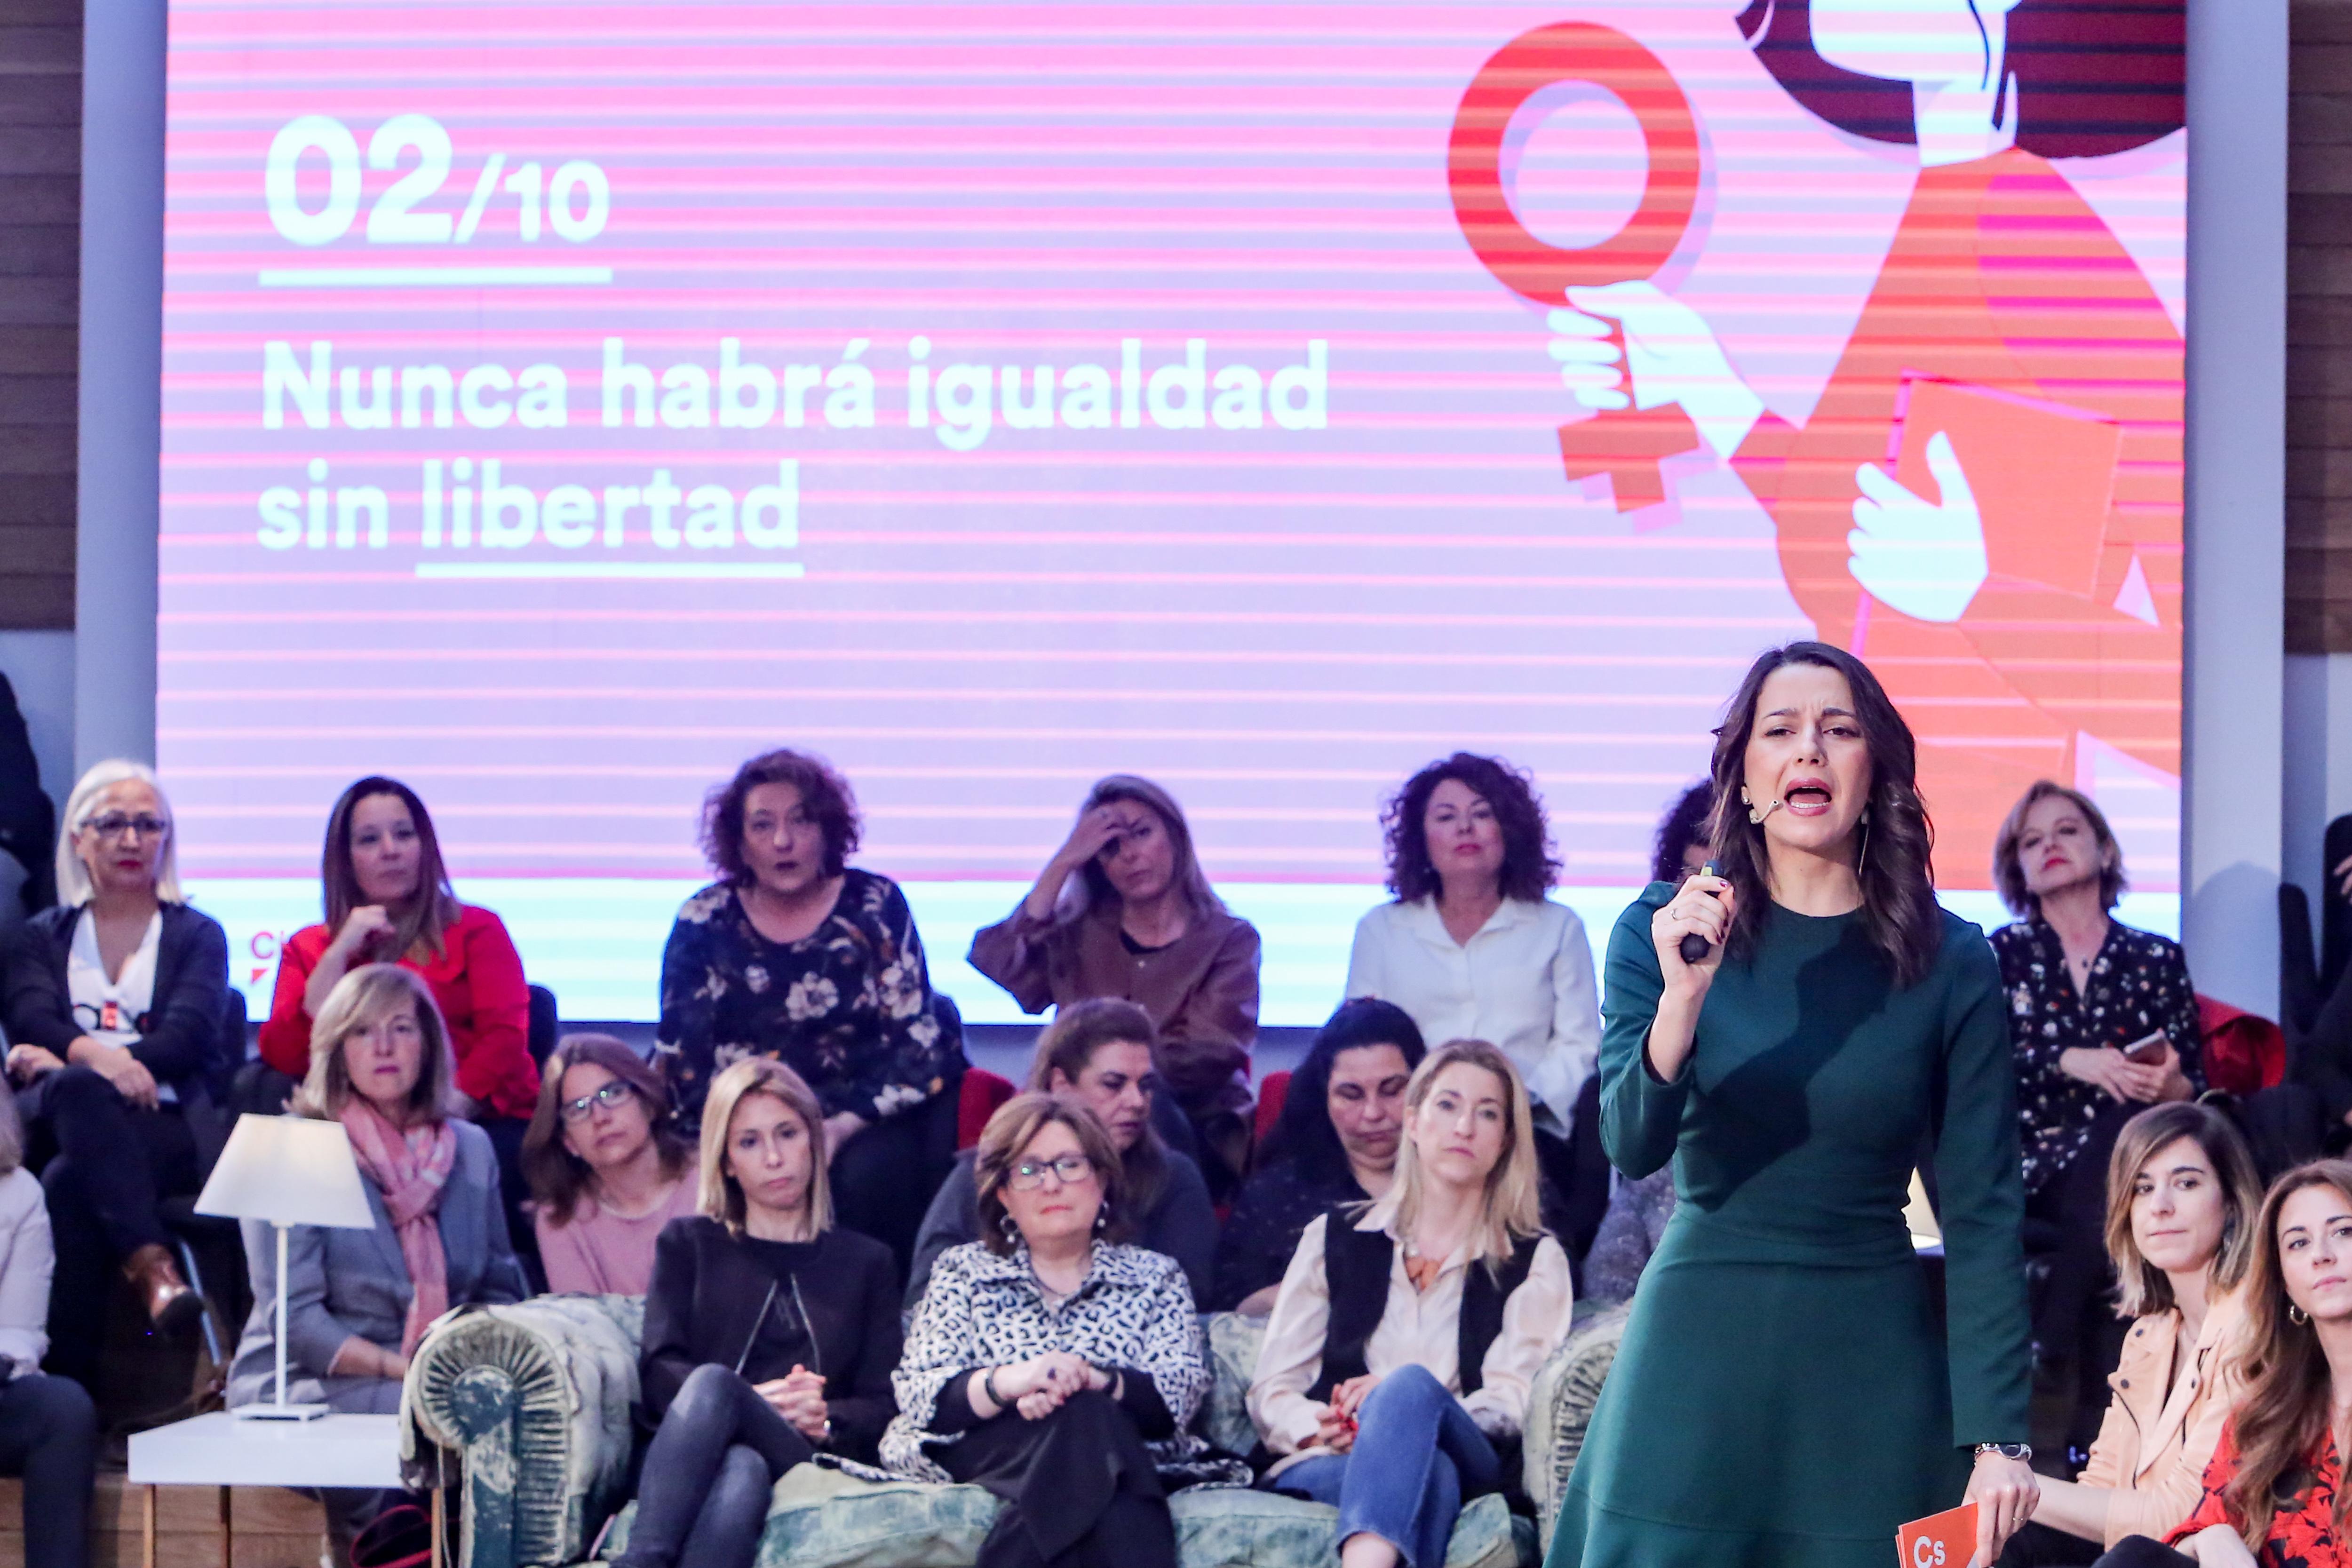 La portavoz de la Ejecutiva de Ciudadanos y líder de la oposición en Cataluña Inés Arrimadas interviene en el acto de presentación del decálogo de Feminismo Liberal del partido